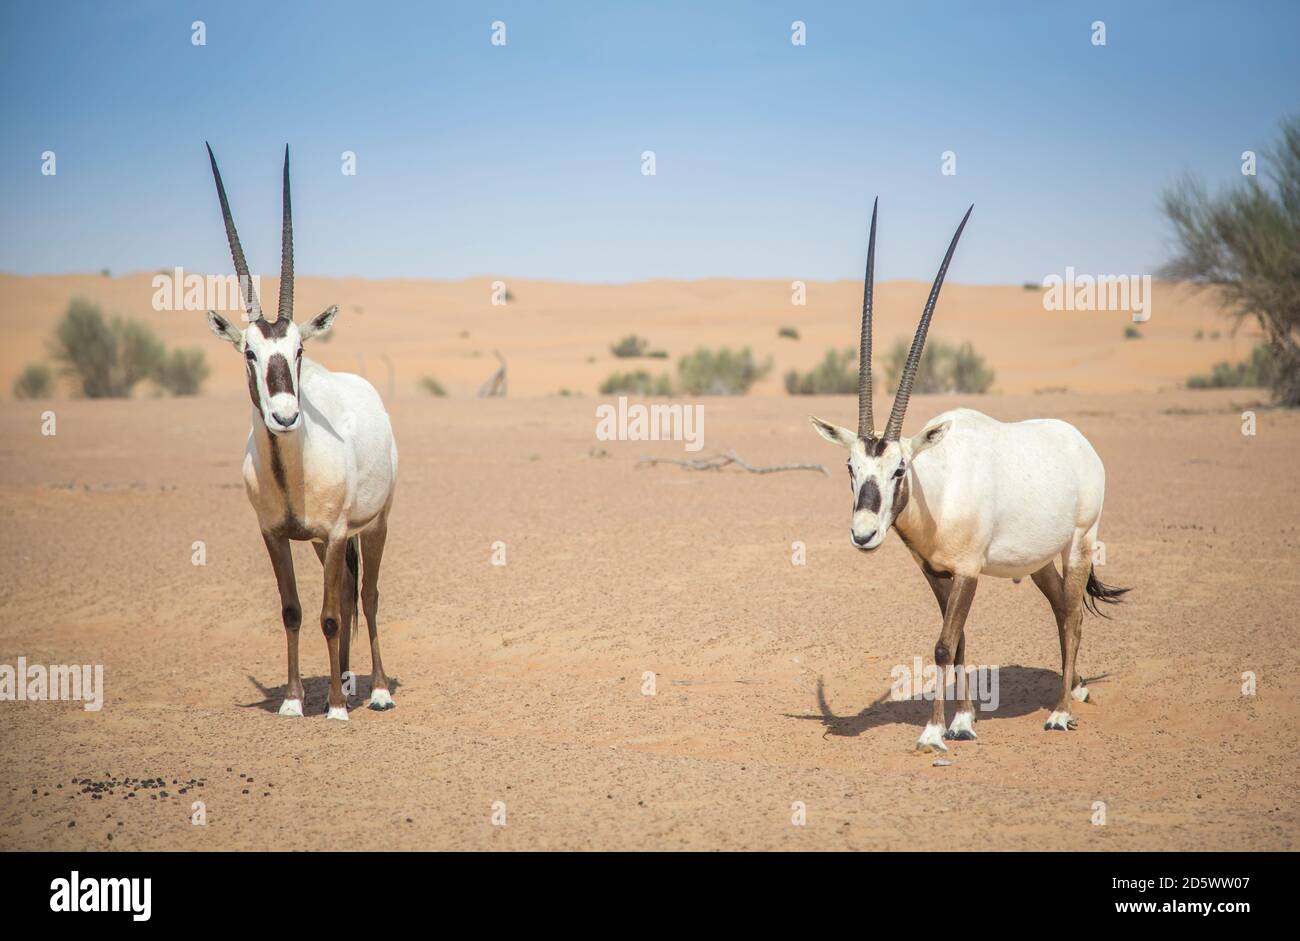 arabian oryx in a desert near Dubai Stock Photo - Alamy